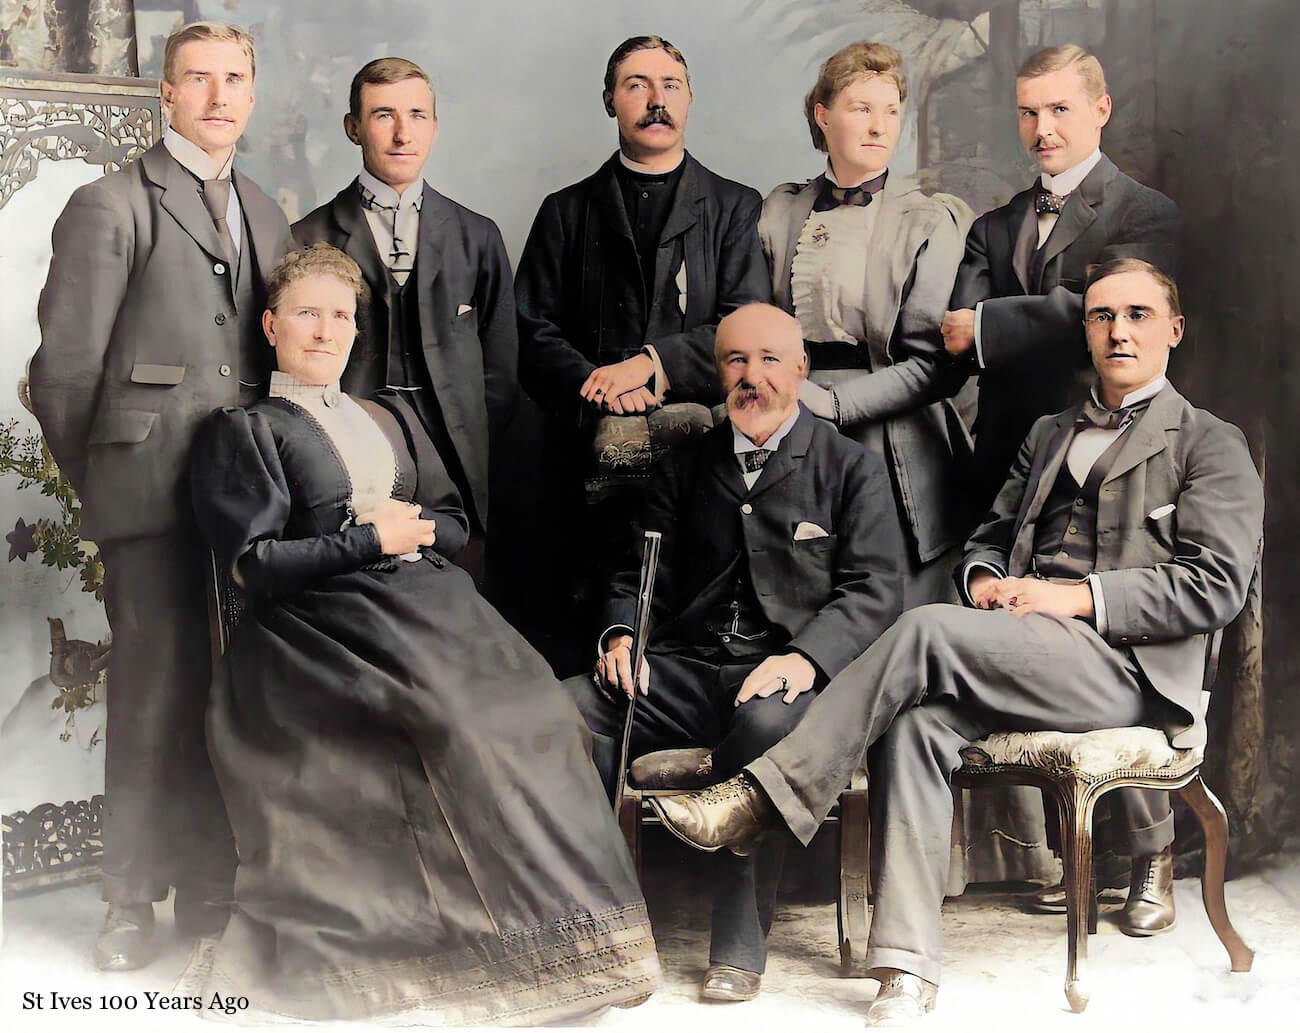 Dr Richard Grove, Dr Reginald Gove, & family, 1894